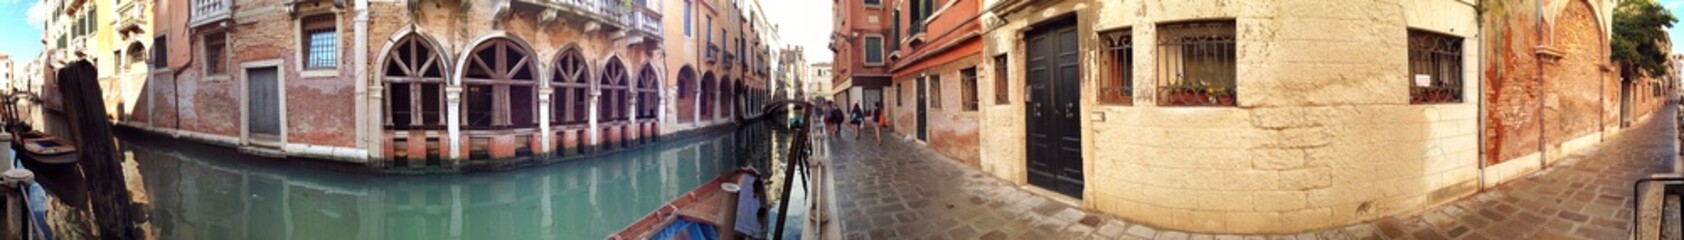 Panorama in Altstadt von Venedig